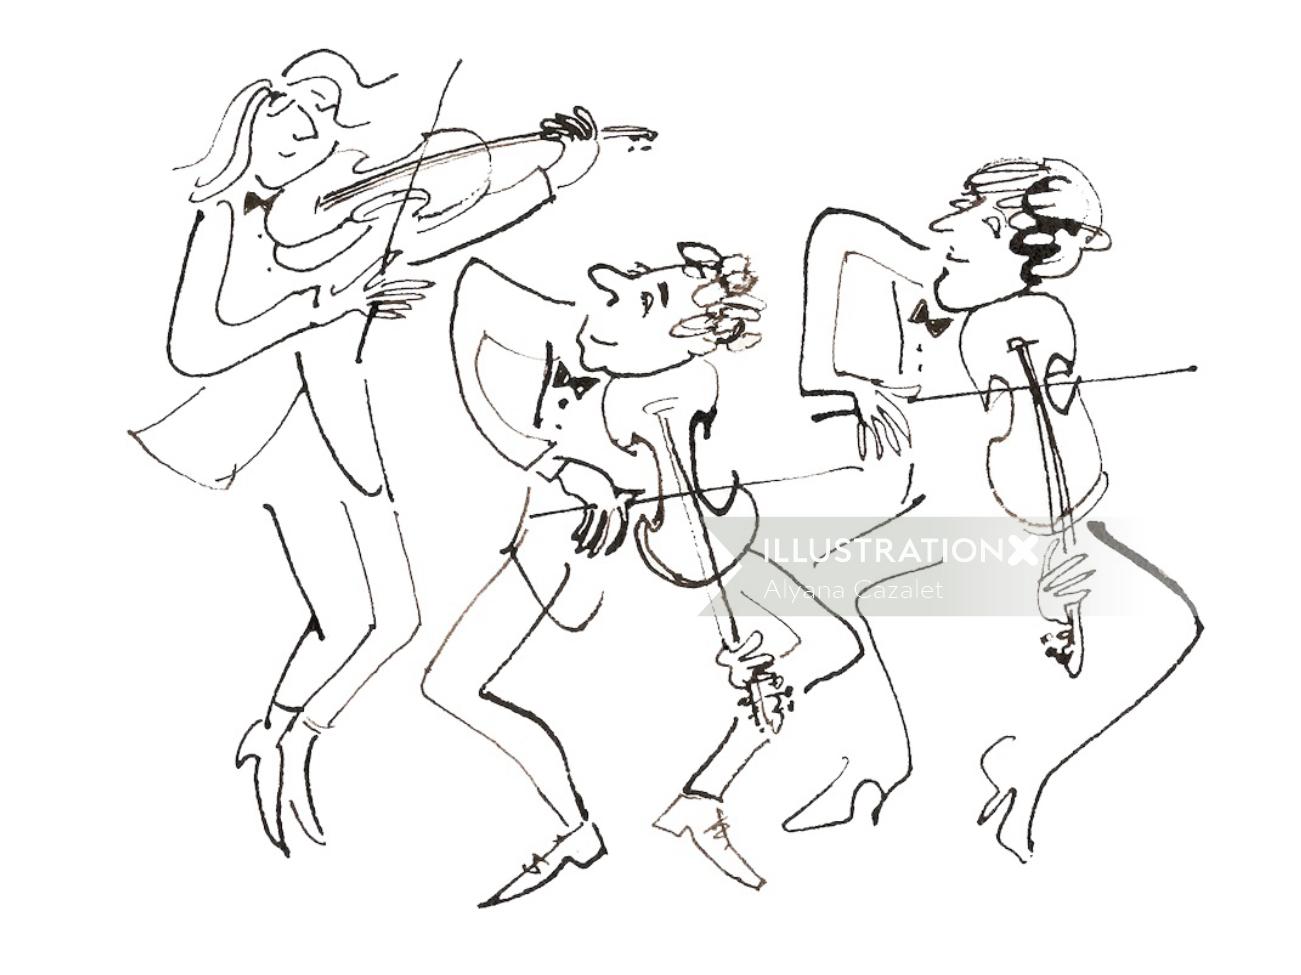 Personnages jouant du violon